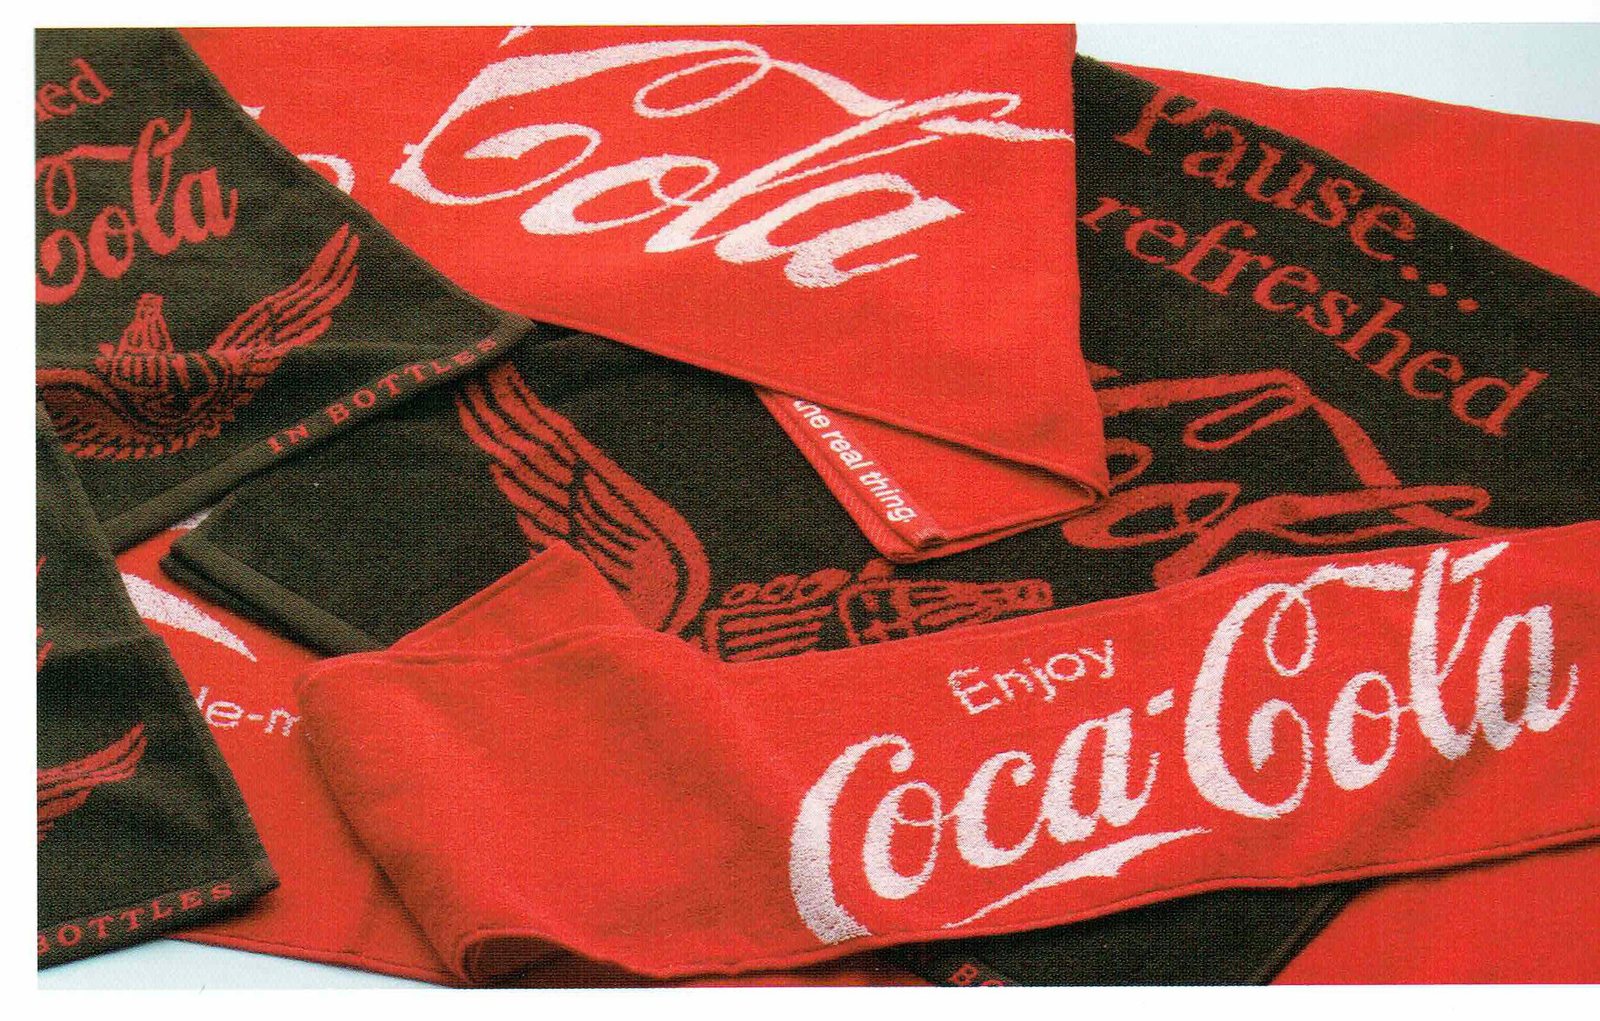 コカ コーラ グッズ バスタオル 大判 75×150cm ジャガード織り ブラック 羽 100%コットン